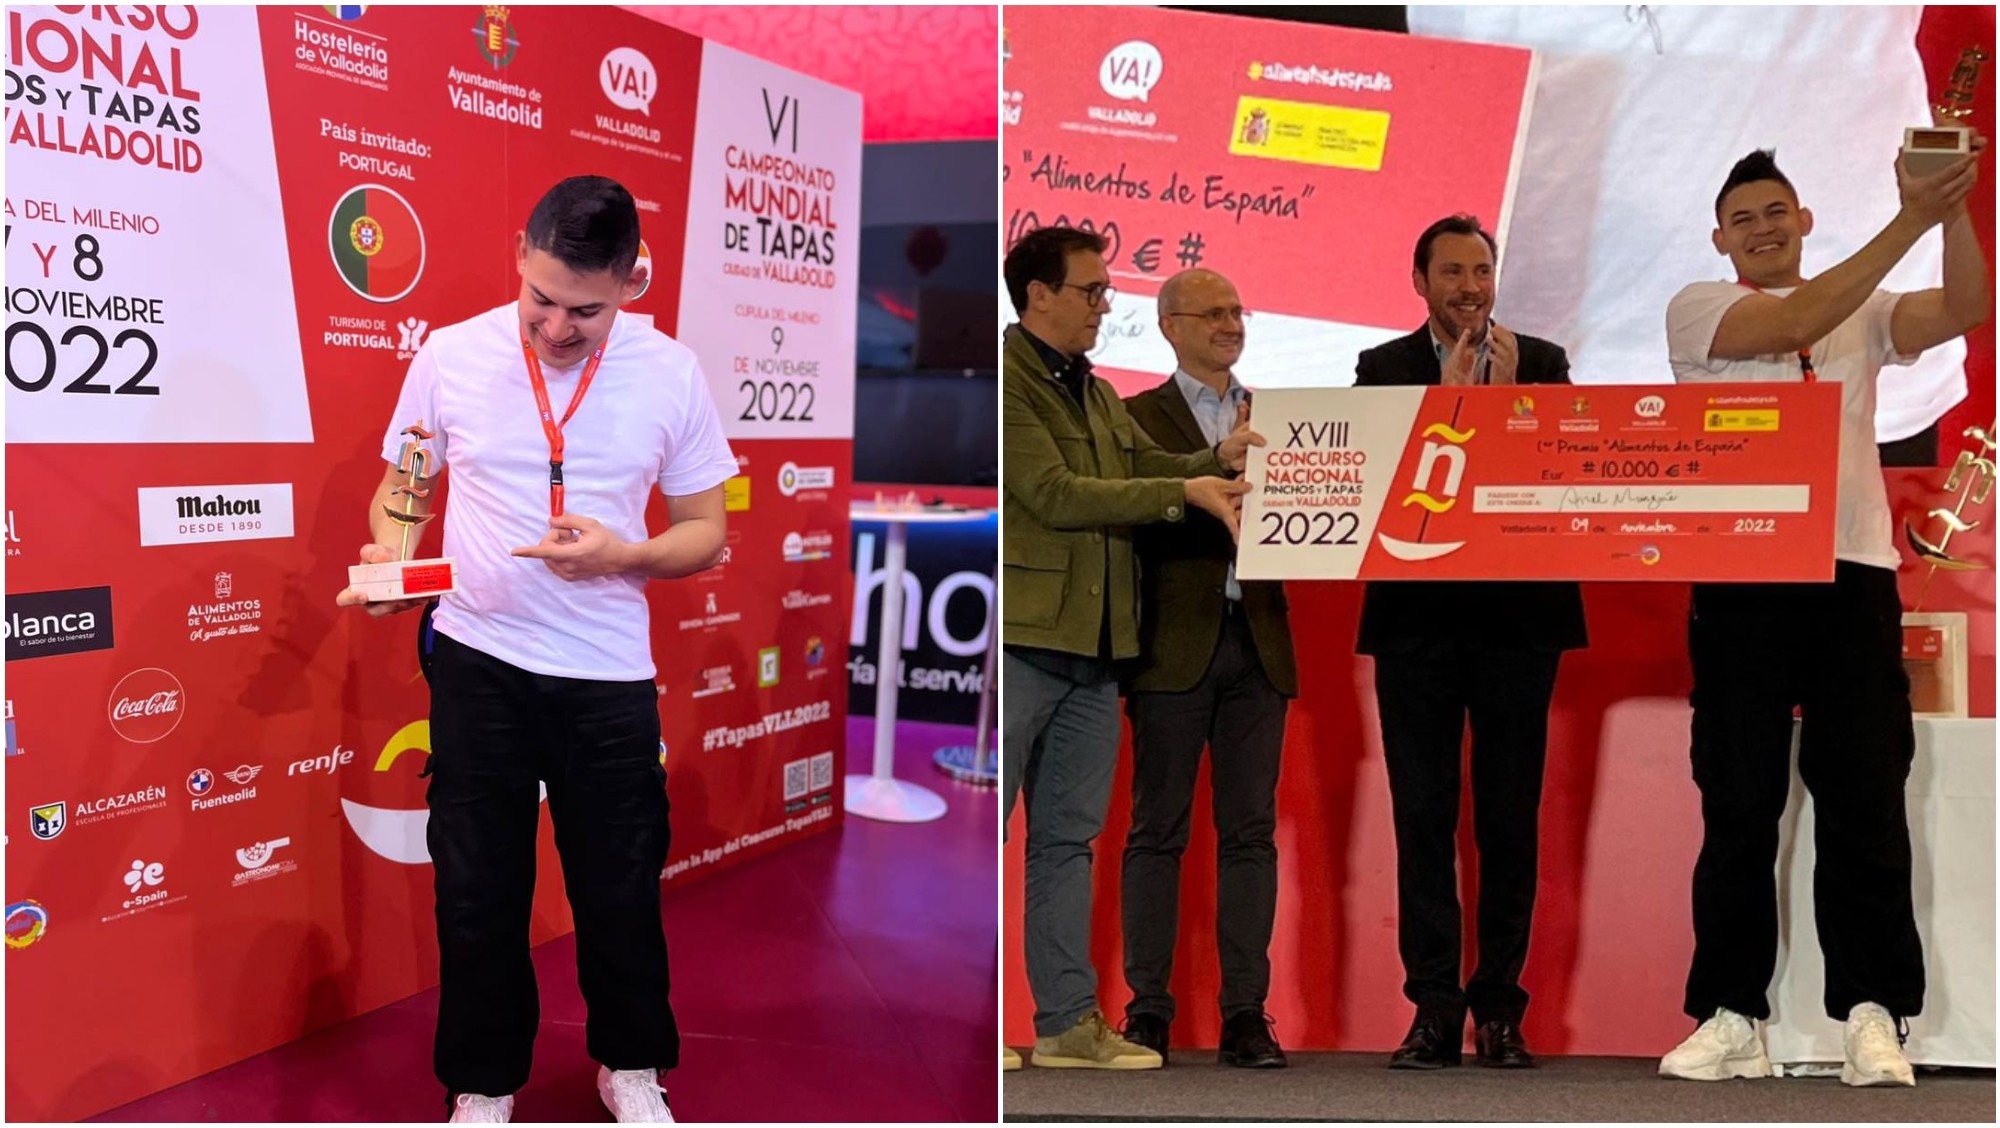 Chef hondureño Ariel Munguía, gana concurso nacional en Valladolid